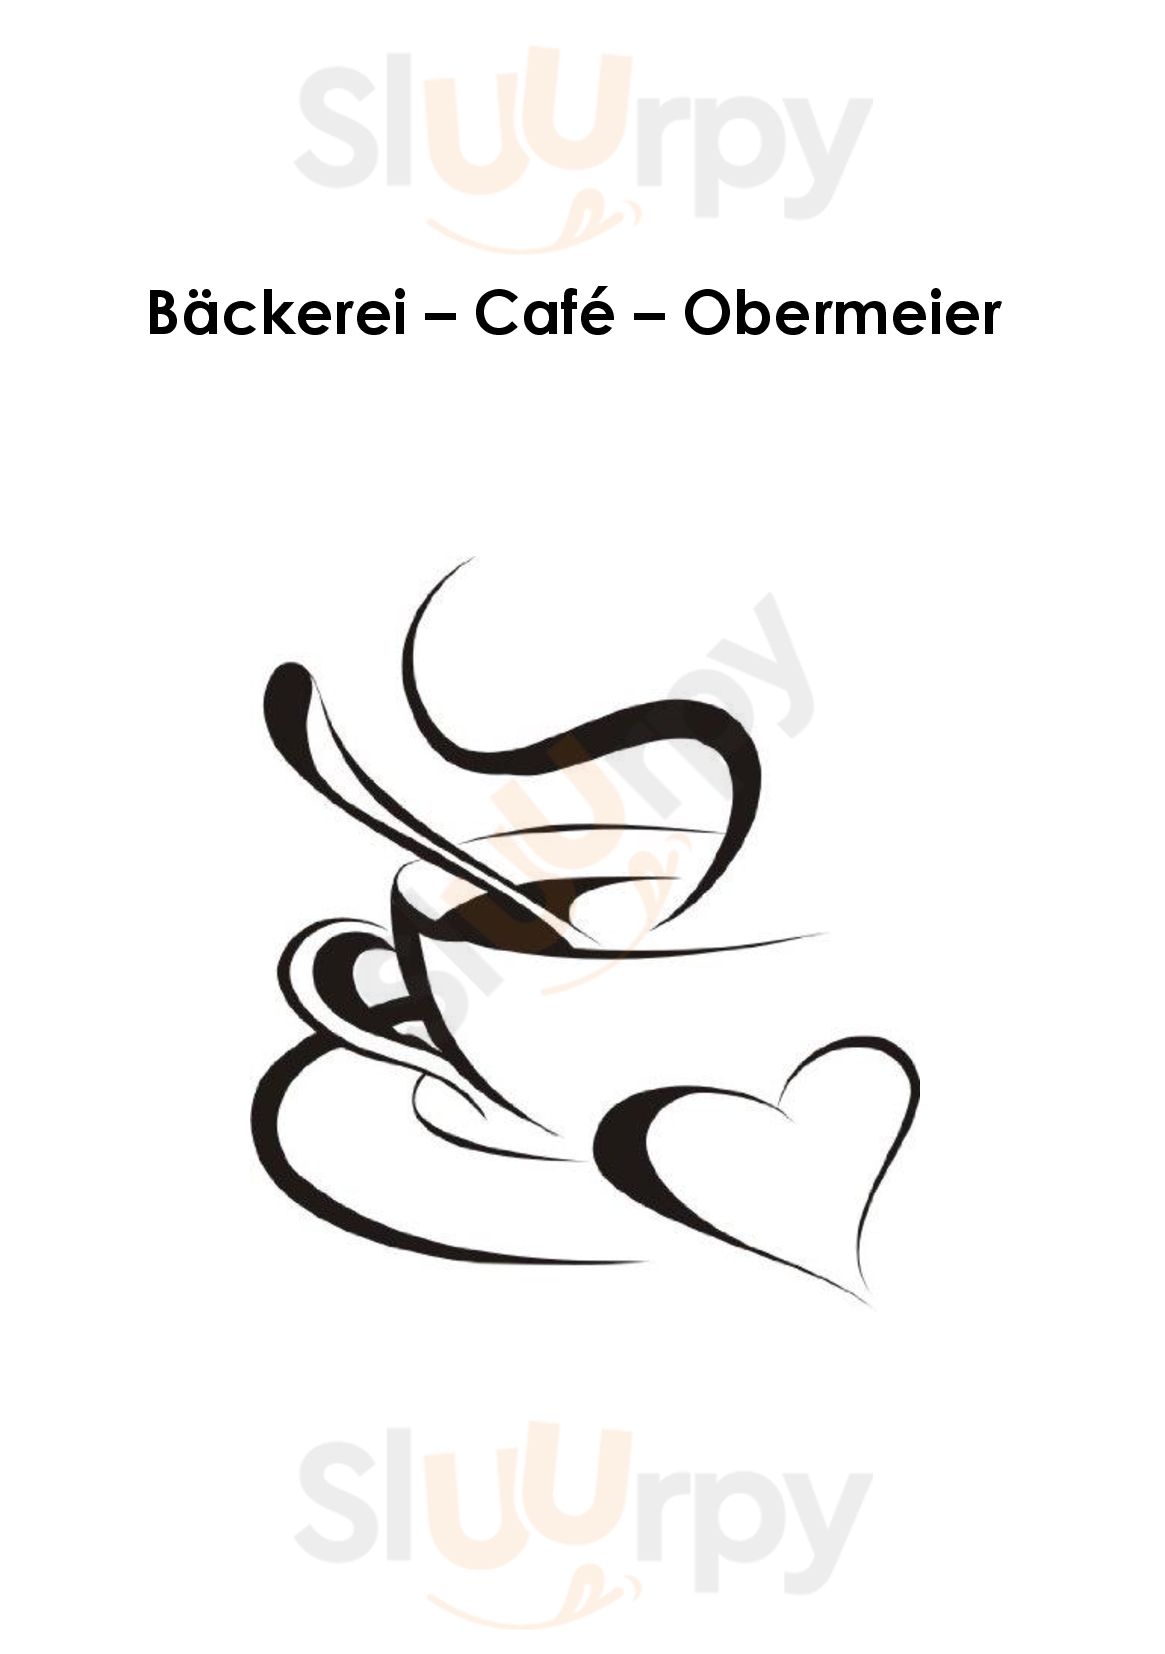 Cafe Bäckerei Obermeier Pfarrkirchen bei Bad Hall Menu - 1